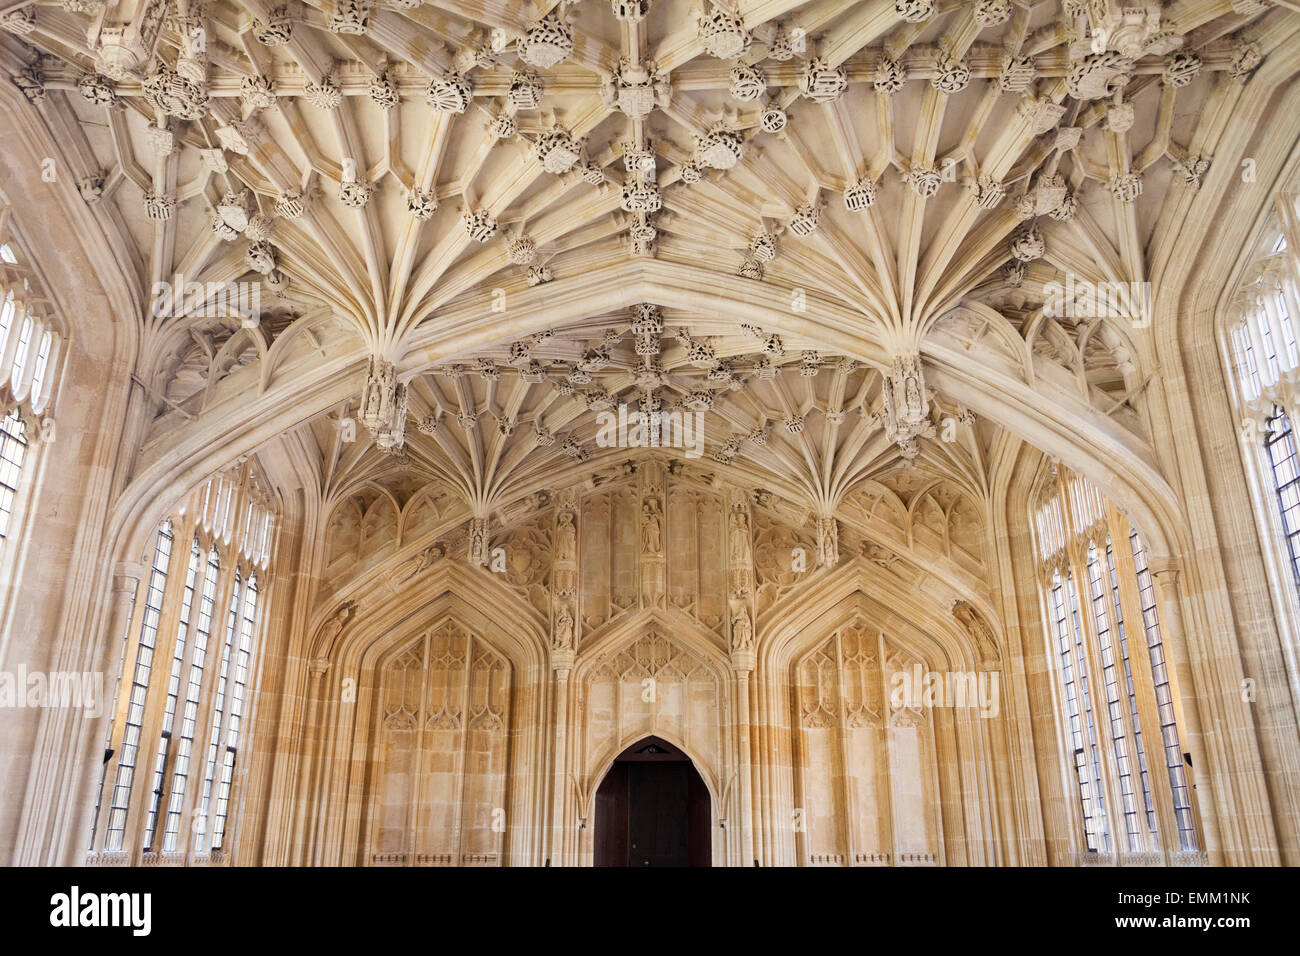 'Divinity School', [Bodleian Library], [université d'Oxford], Oxford, Oxfordshire, England, UK Banque D'Images